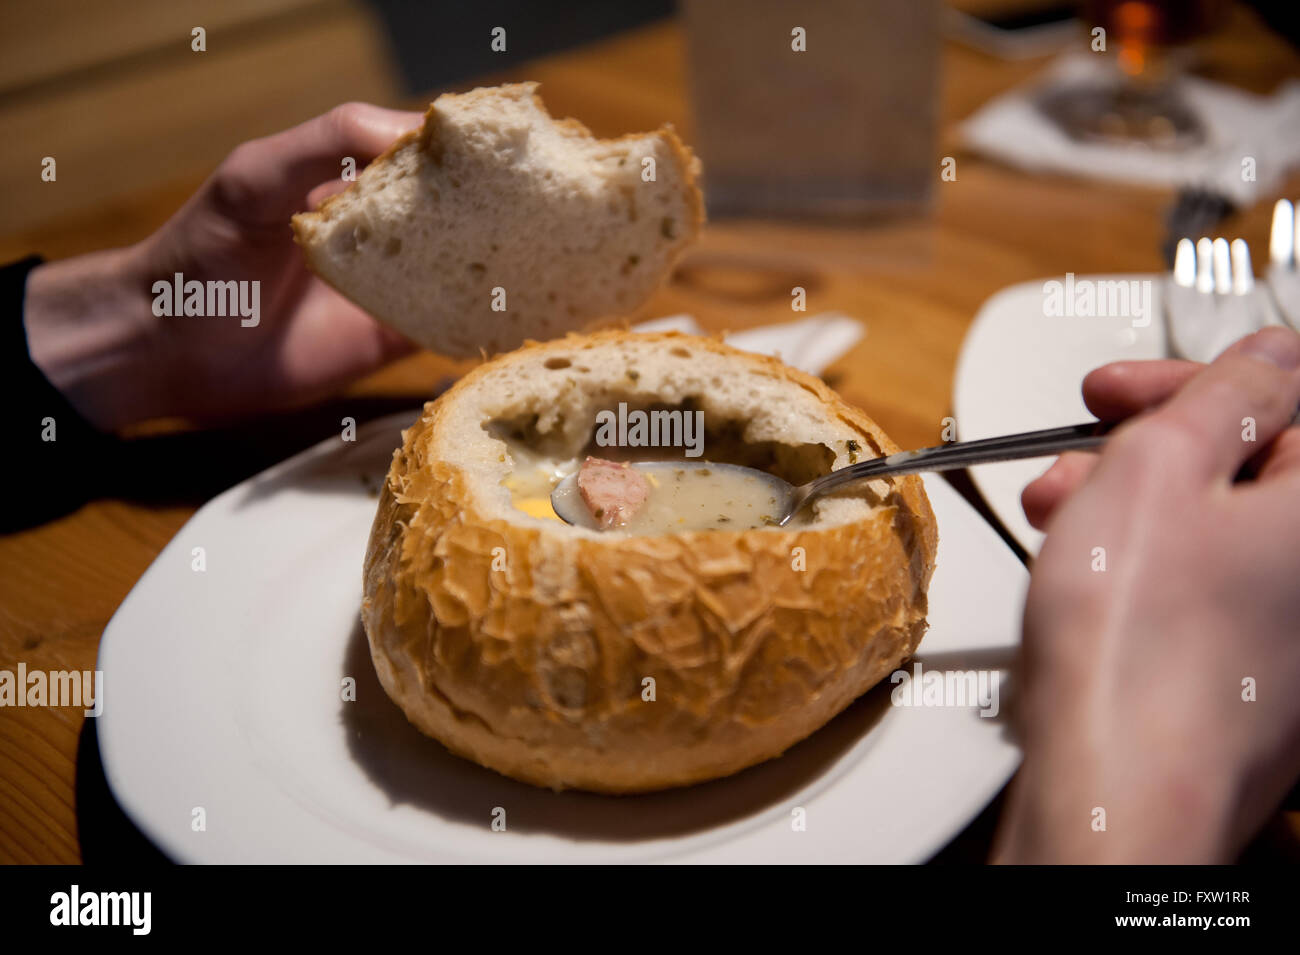 Manger du pain de seigle dans la soupe aigre avec des saucisses et des œufs, de l'alimentation sur la table au restaurant au cours de visites Pologne, traditionnel polonais Banque D'Images